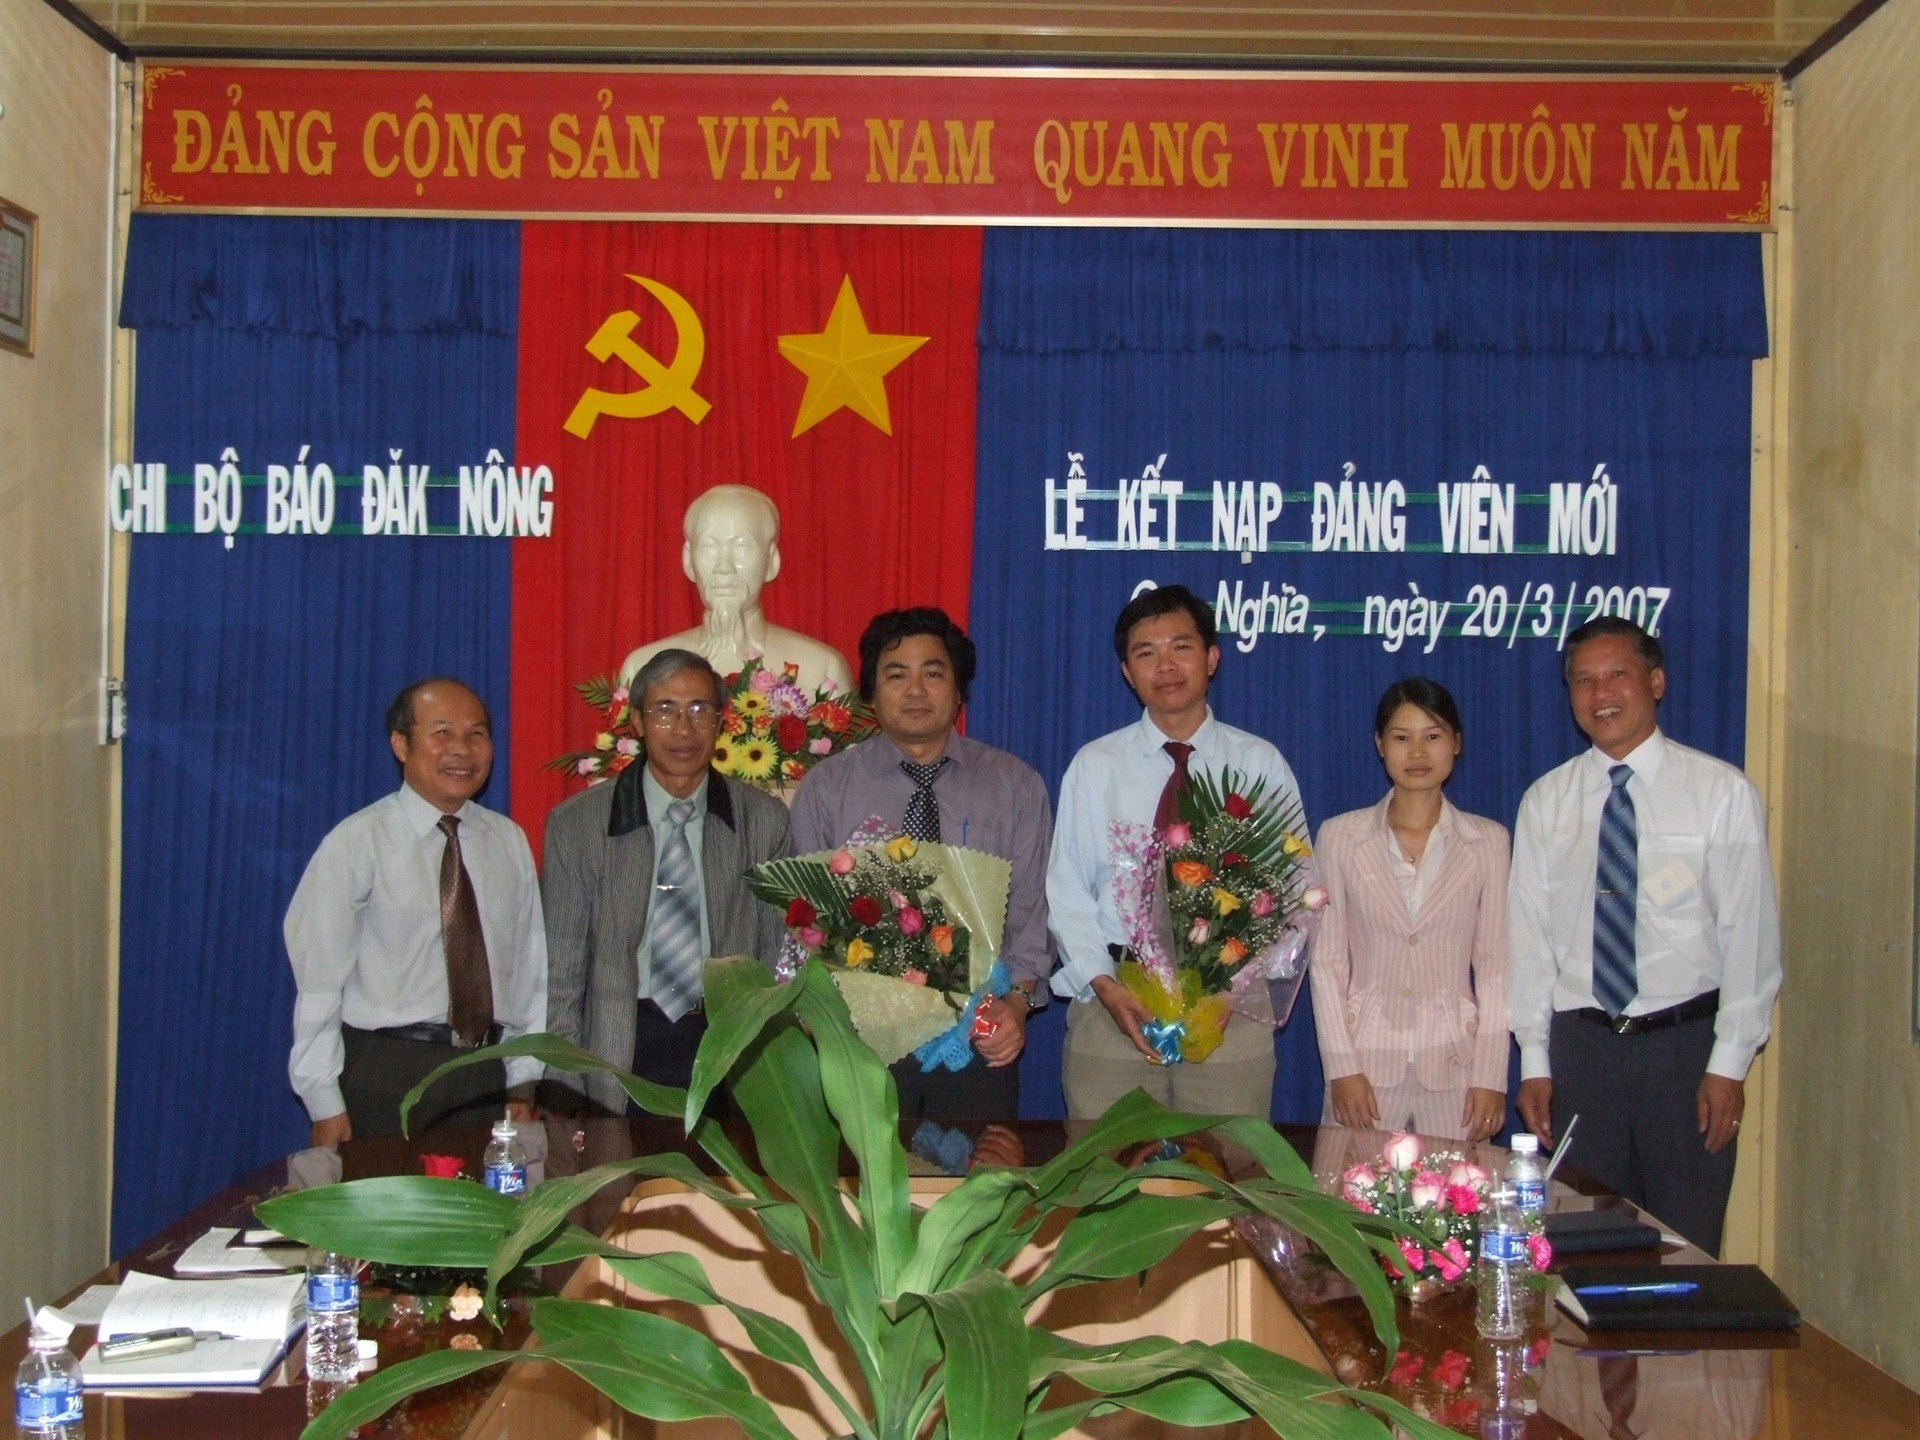 Chi bộ Báo Đắk Nông tổ chức kết nạp Đảng cho 2 đồng chí là Nguyễn Mạnh Hùng và Nguyễn Công Lý vào ngày 20/3/2007